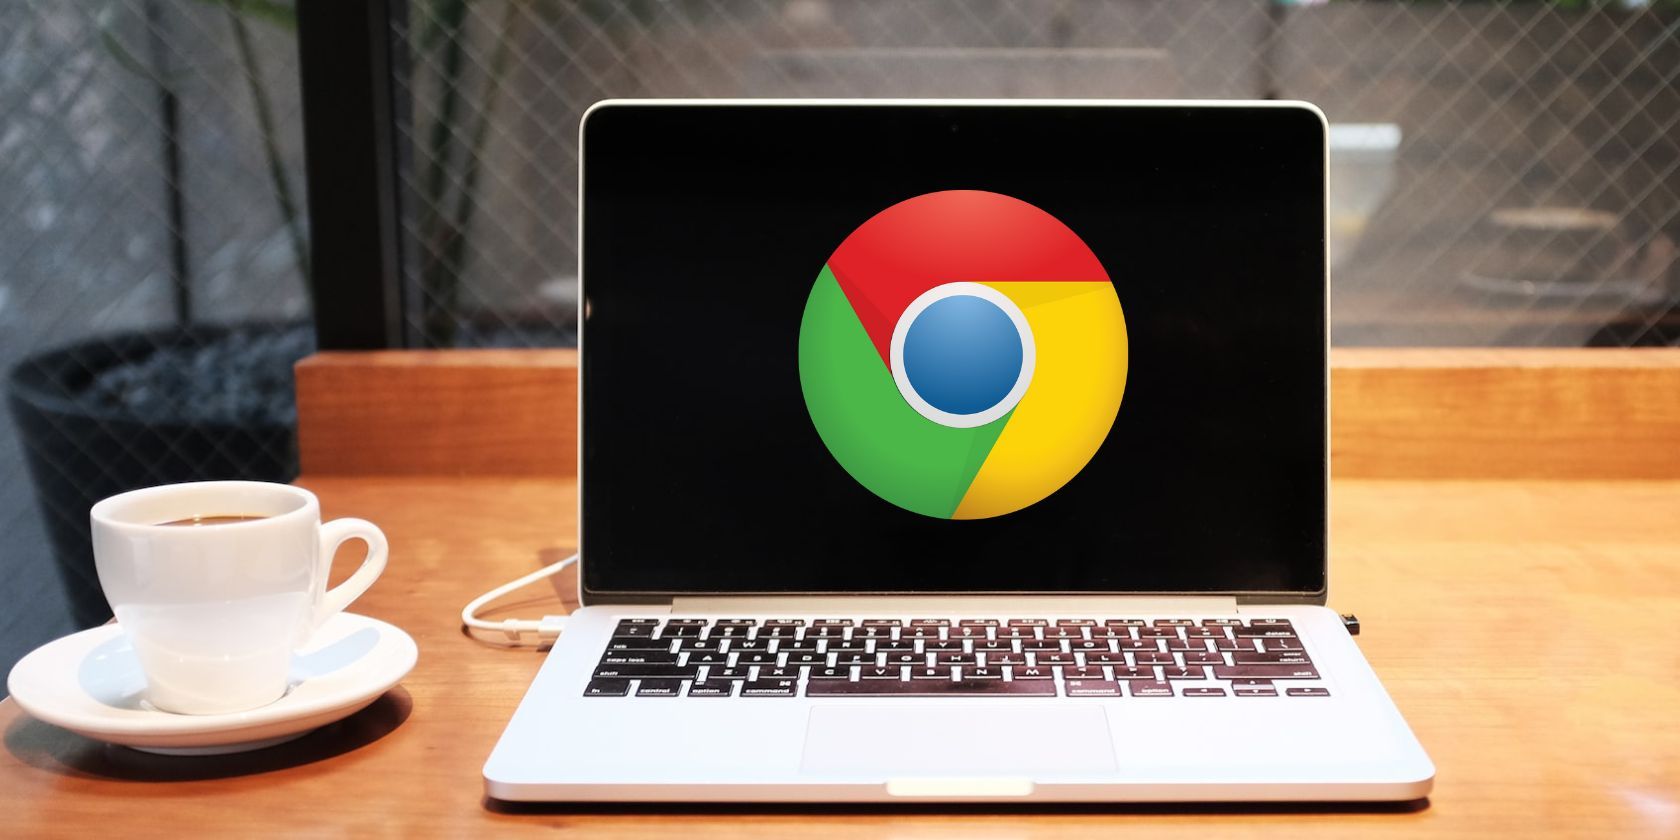 Un ordinateur portable argenté avec un logo Google Chrome à l'écran